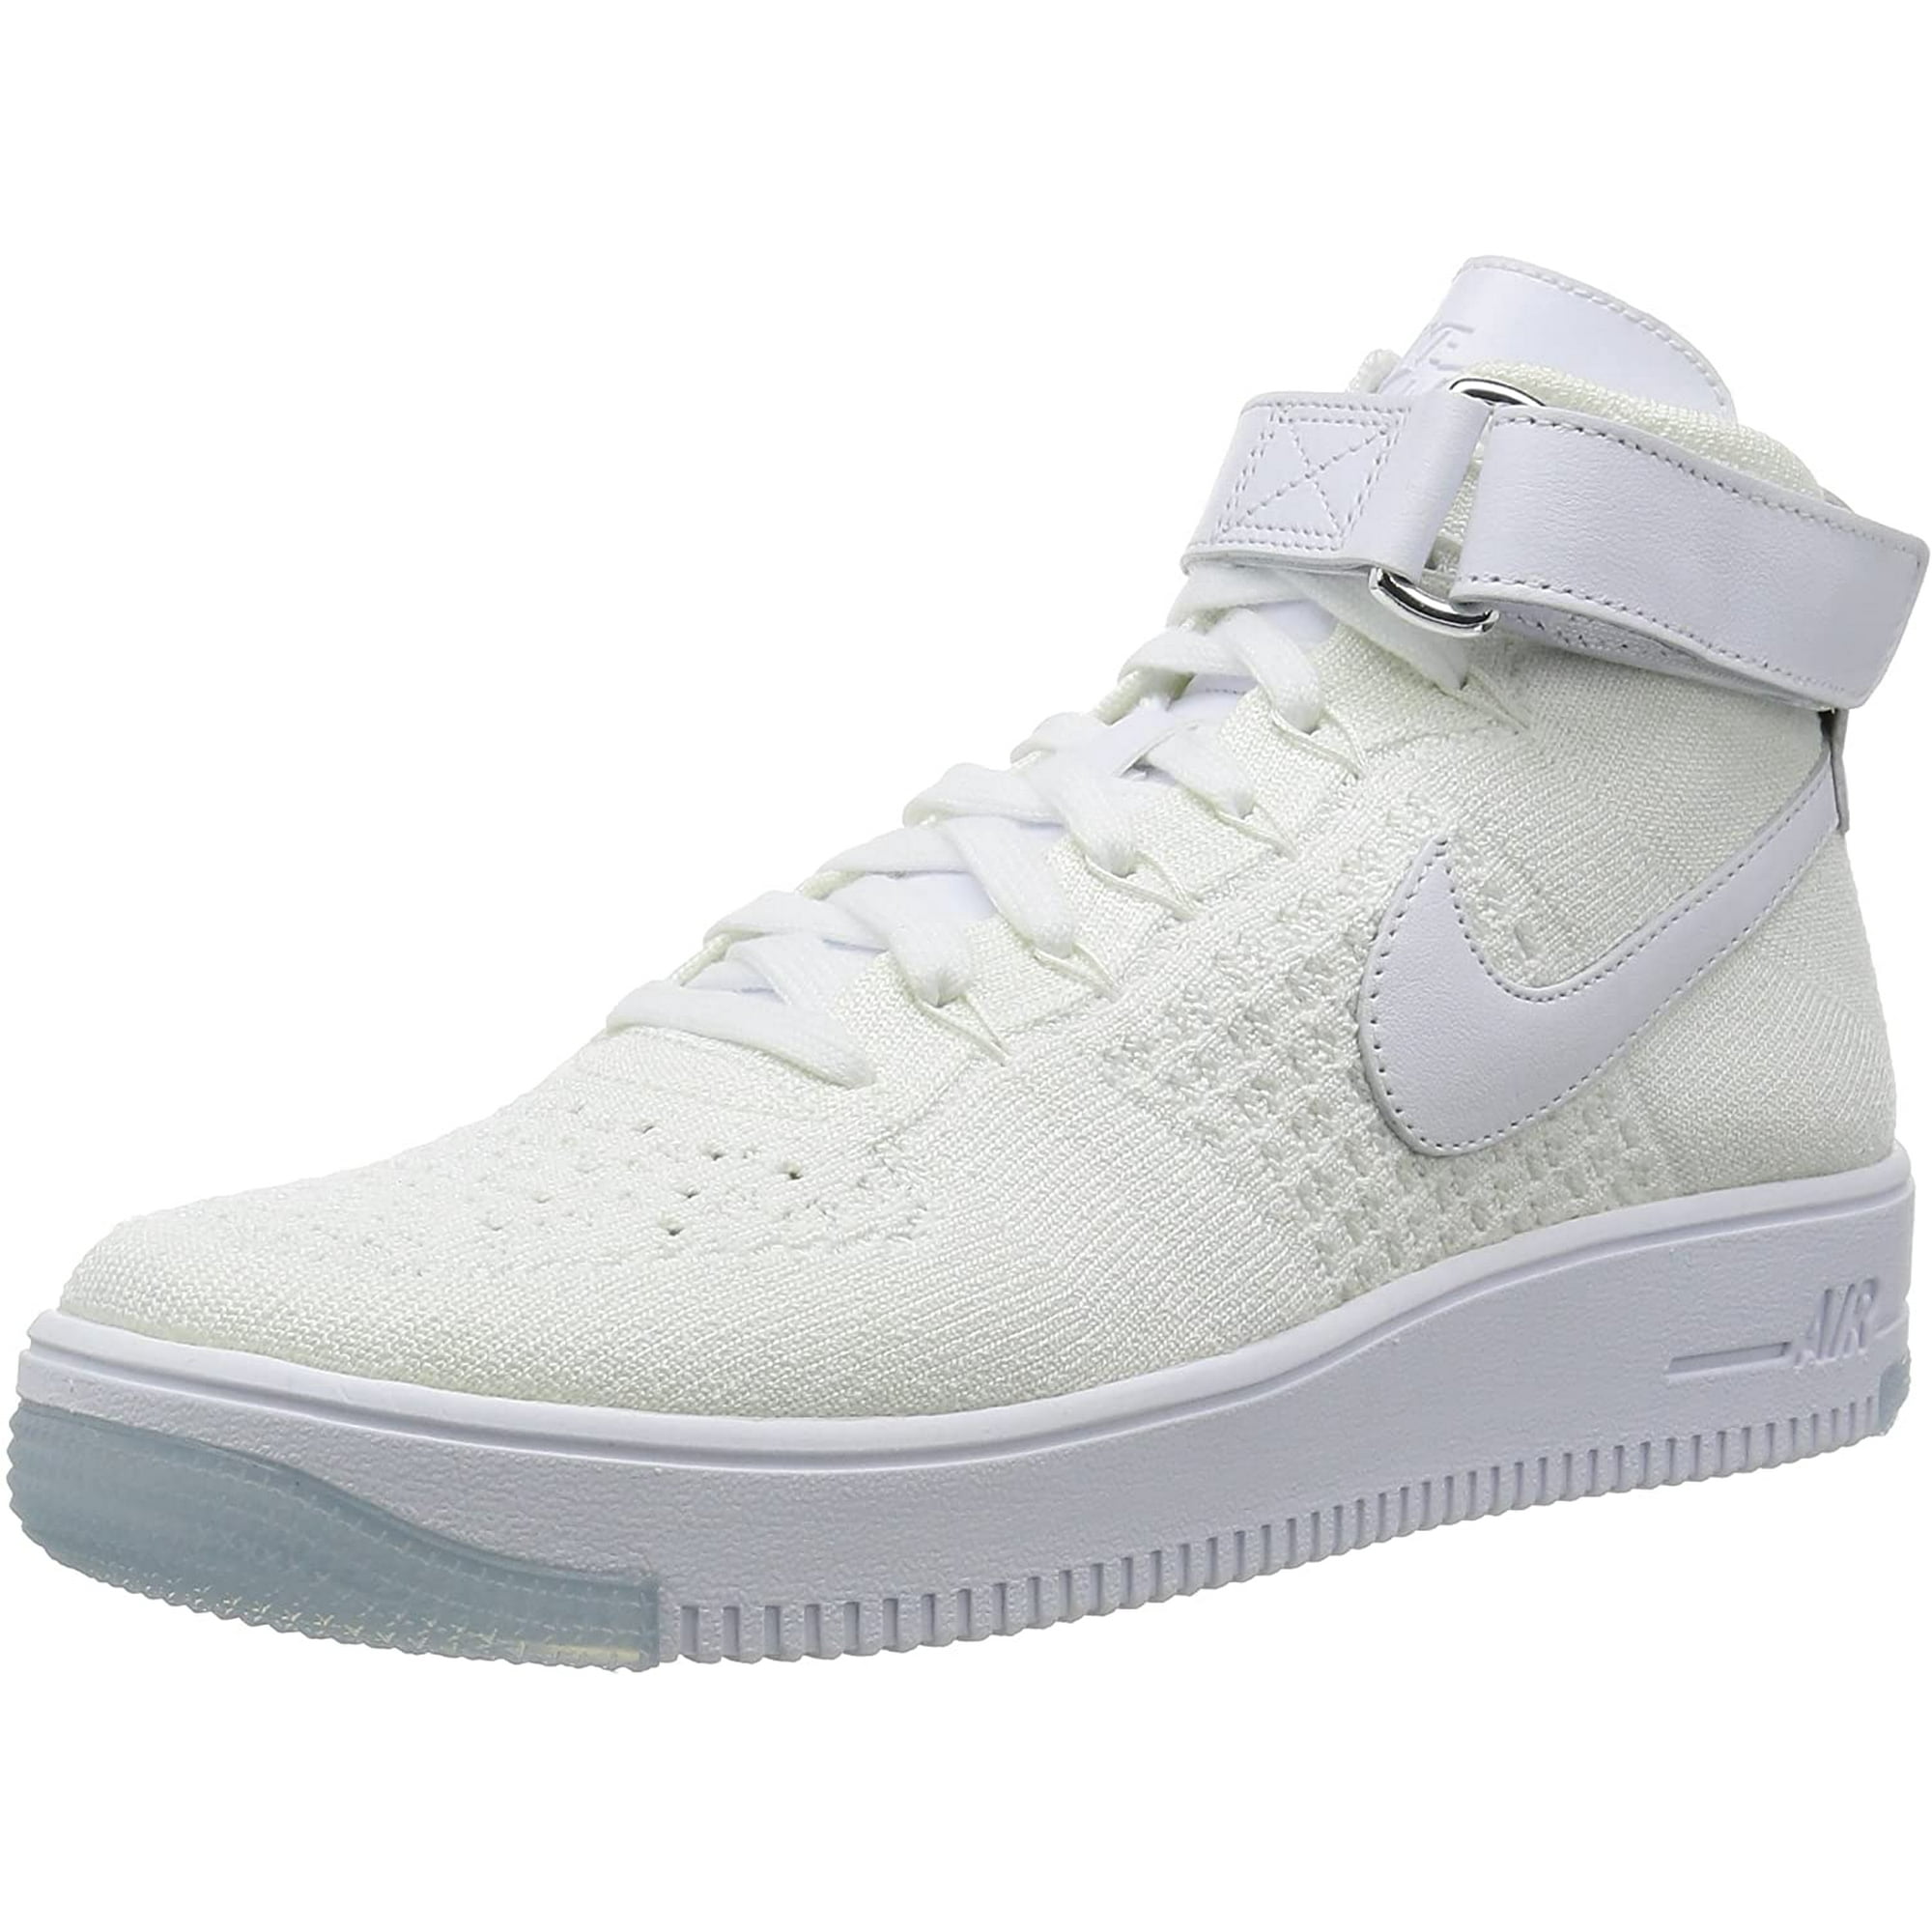 Nike Air Force 1 82' original shoe